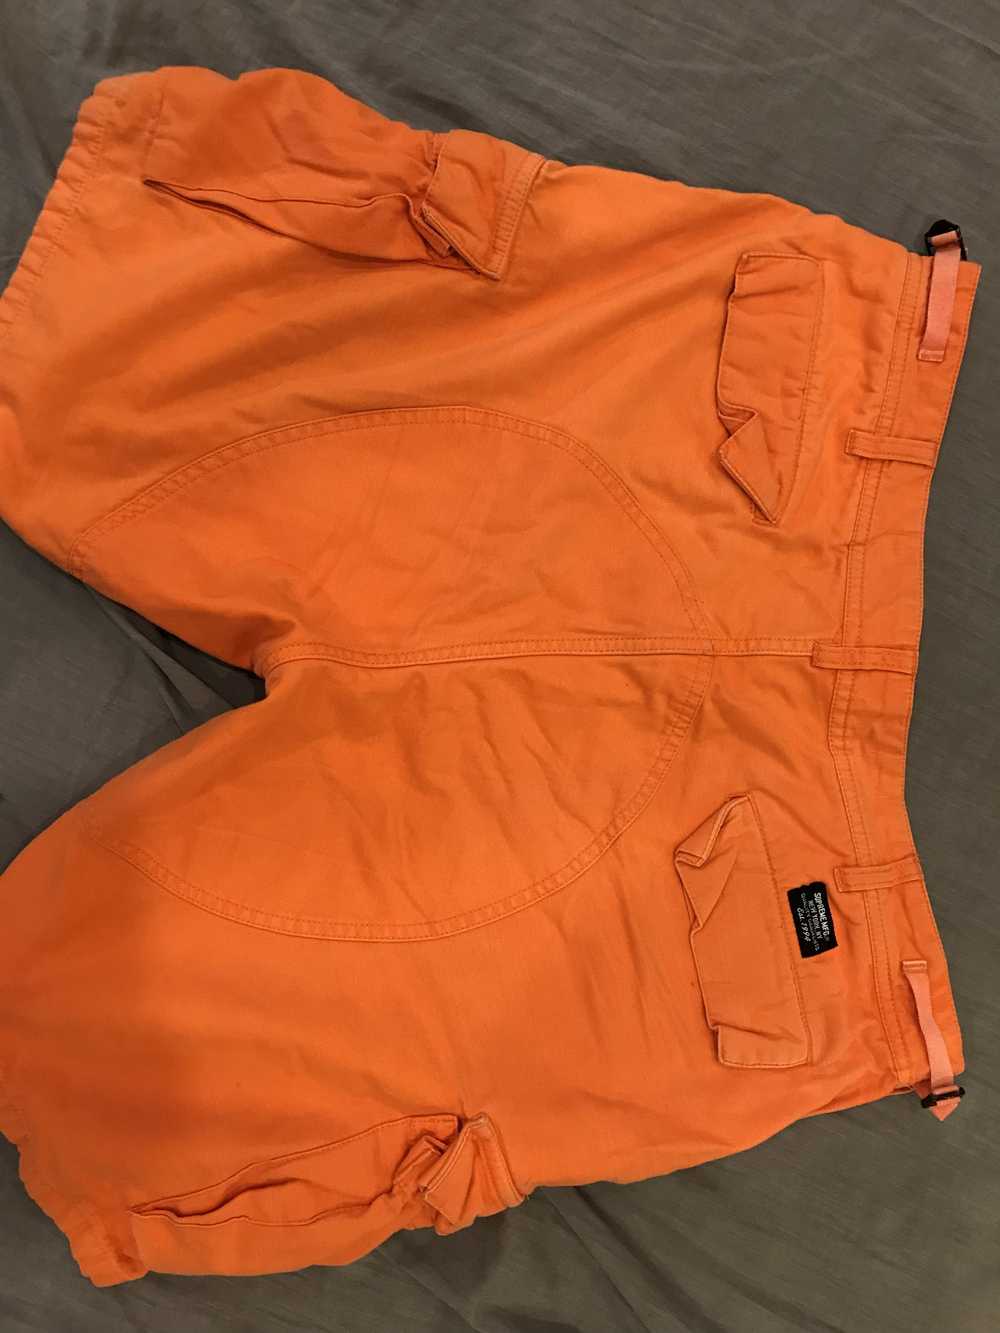 Supreme supreme orange heavy duty work shorts - image 4